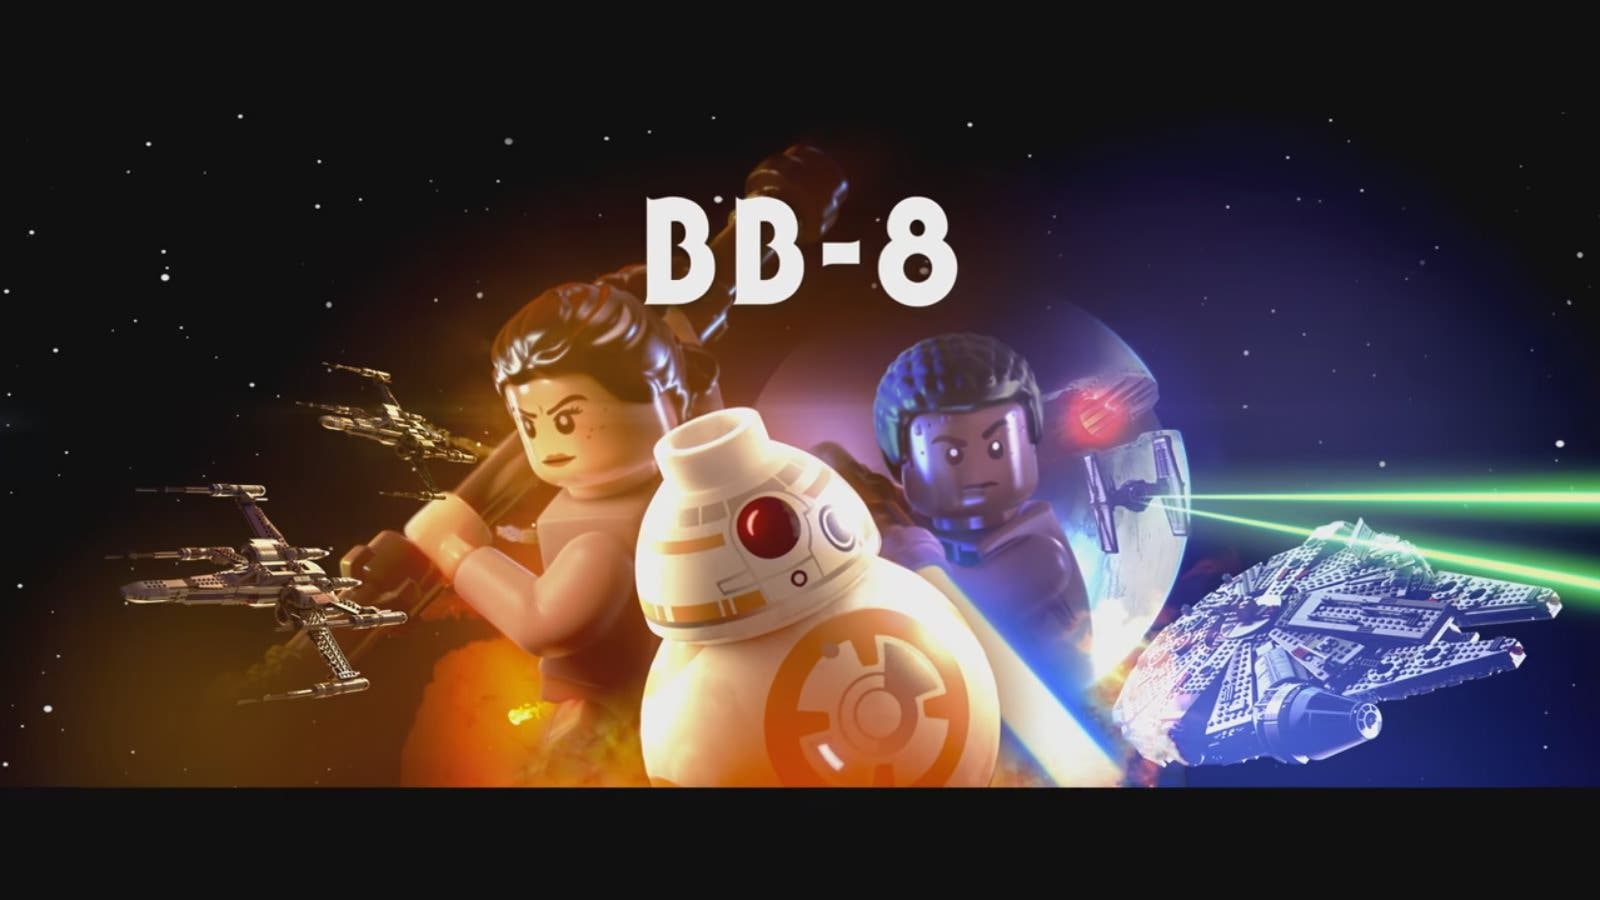 Sale un clip de ‘LEGO Star Wars: El Despertar de la Fuerza’ con BB-8 como protagonista